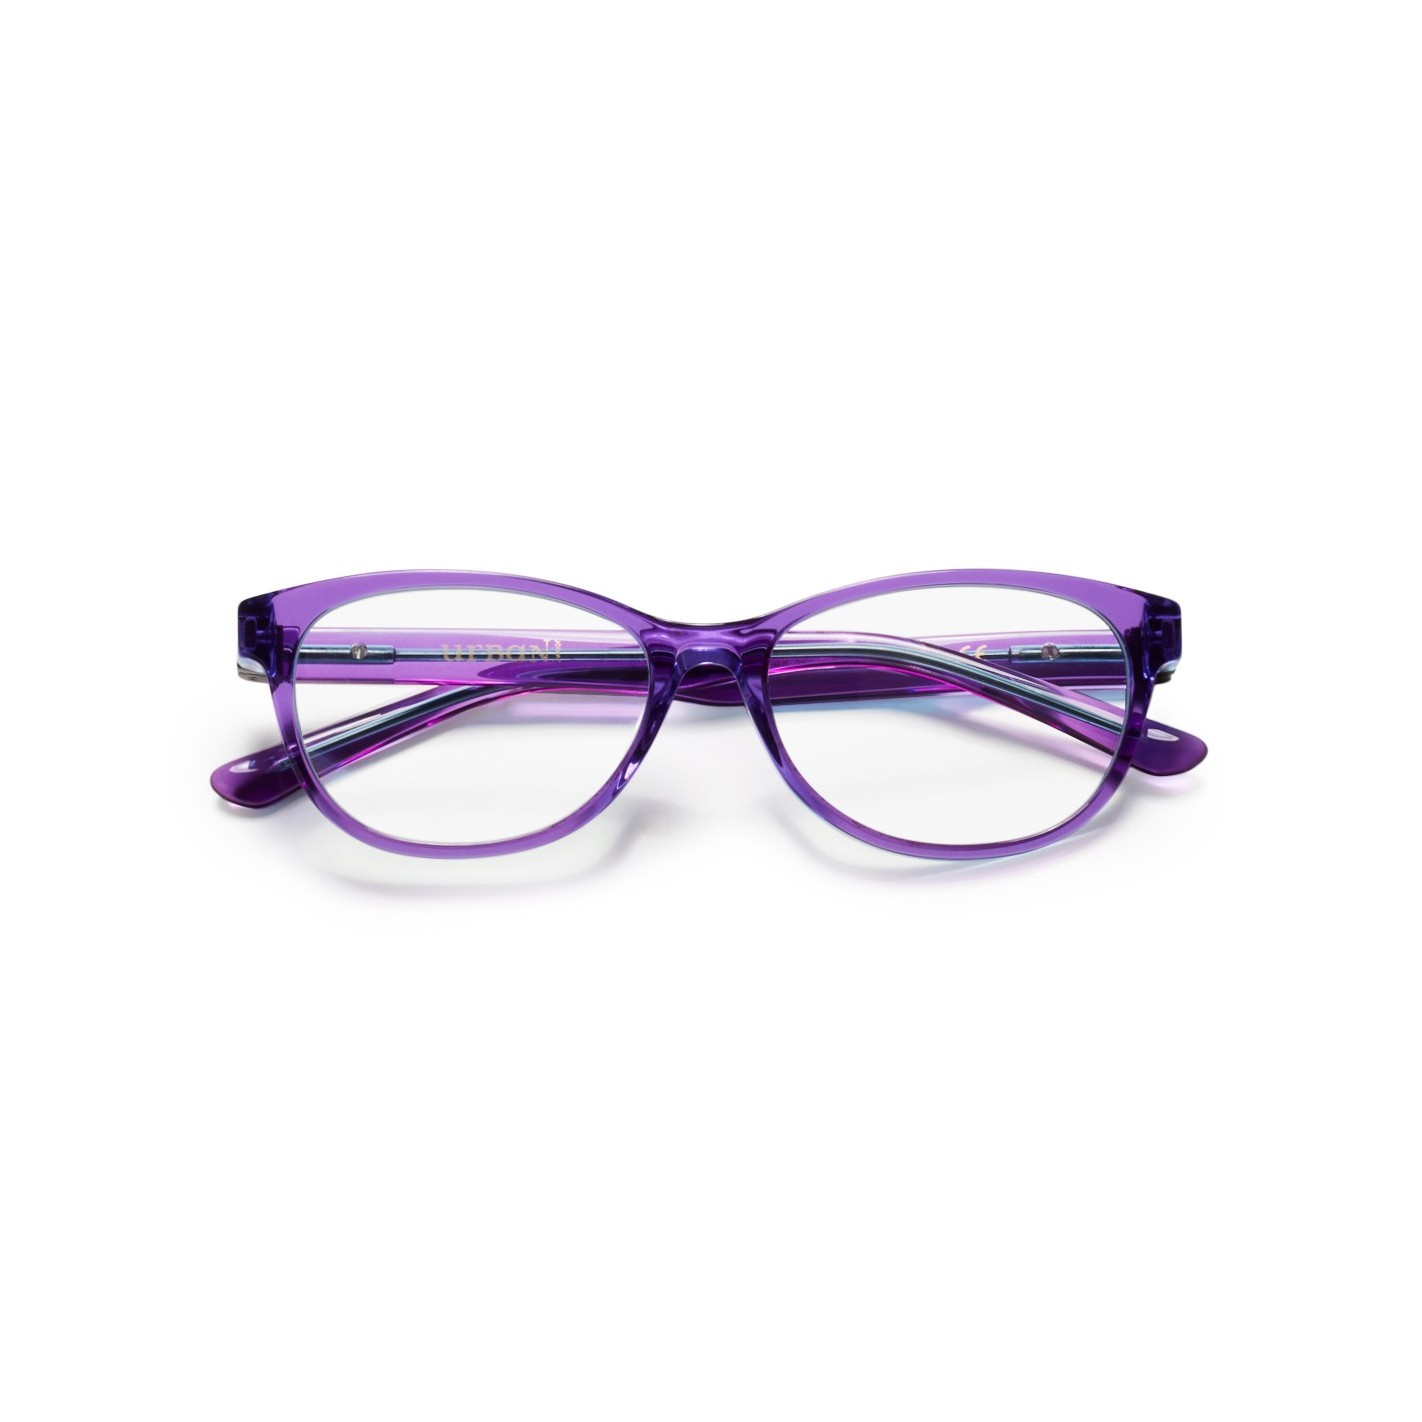 Gafas Graduadas Urban Junior niña Wendy C70 lila forma ovalada acetato estilo